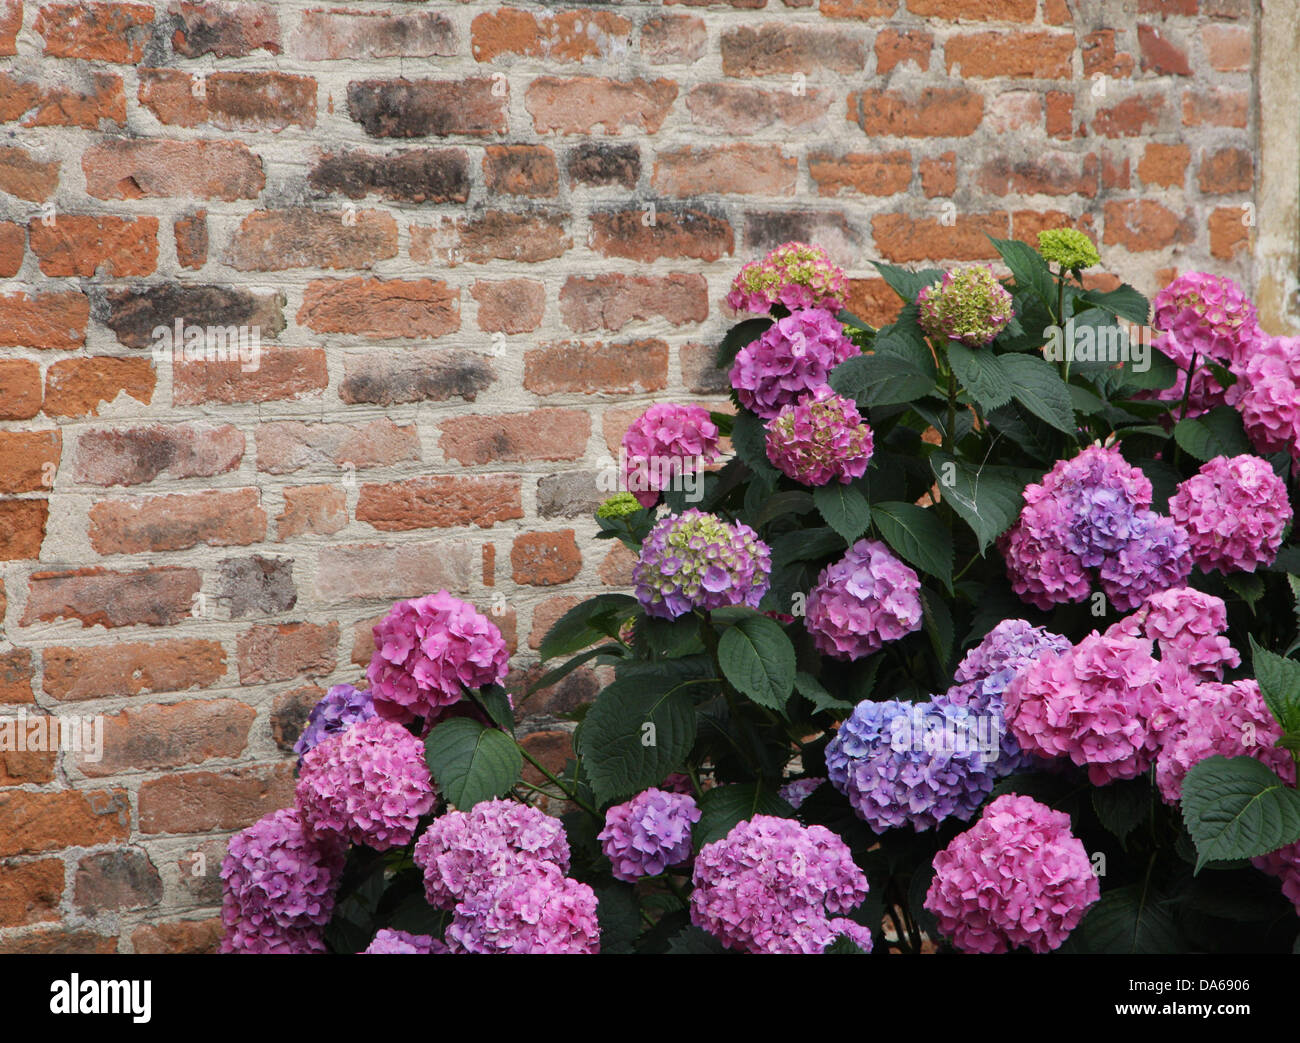 Las hortensias púrpura floreció con diminutas flores con un antiguo muro de ladrillo rojo Foto de stock